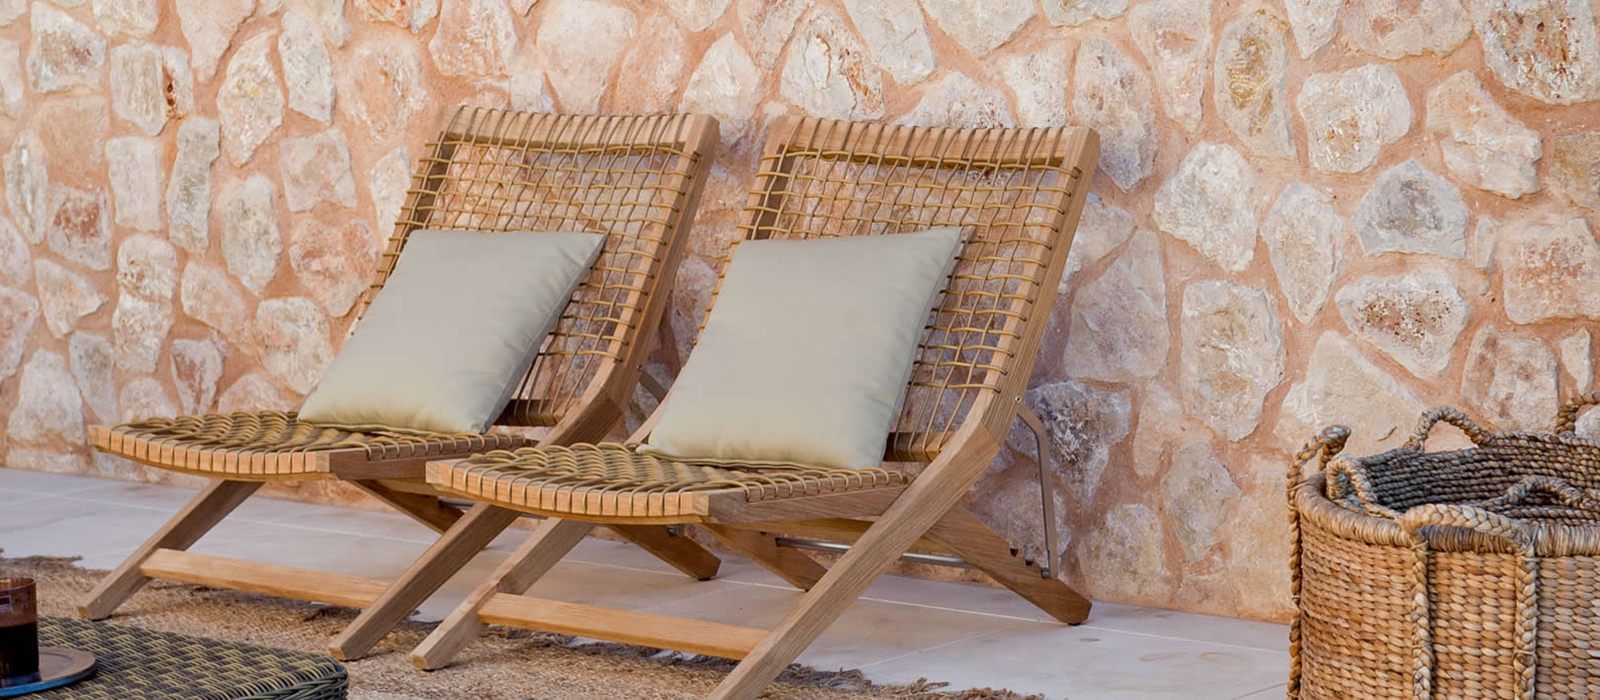 Sdraio da giardino e chaise longue esterno: relax in stile